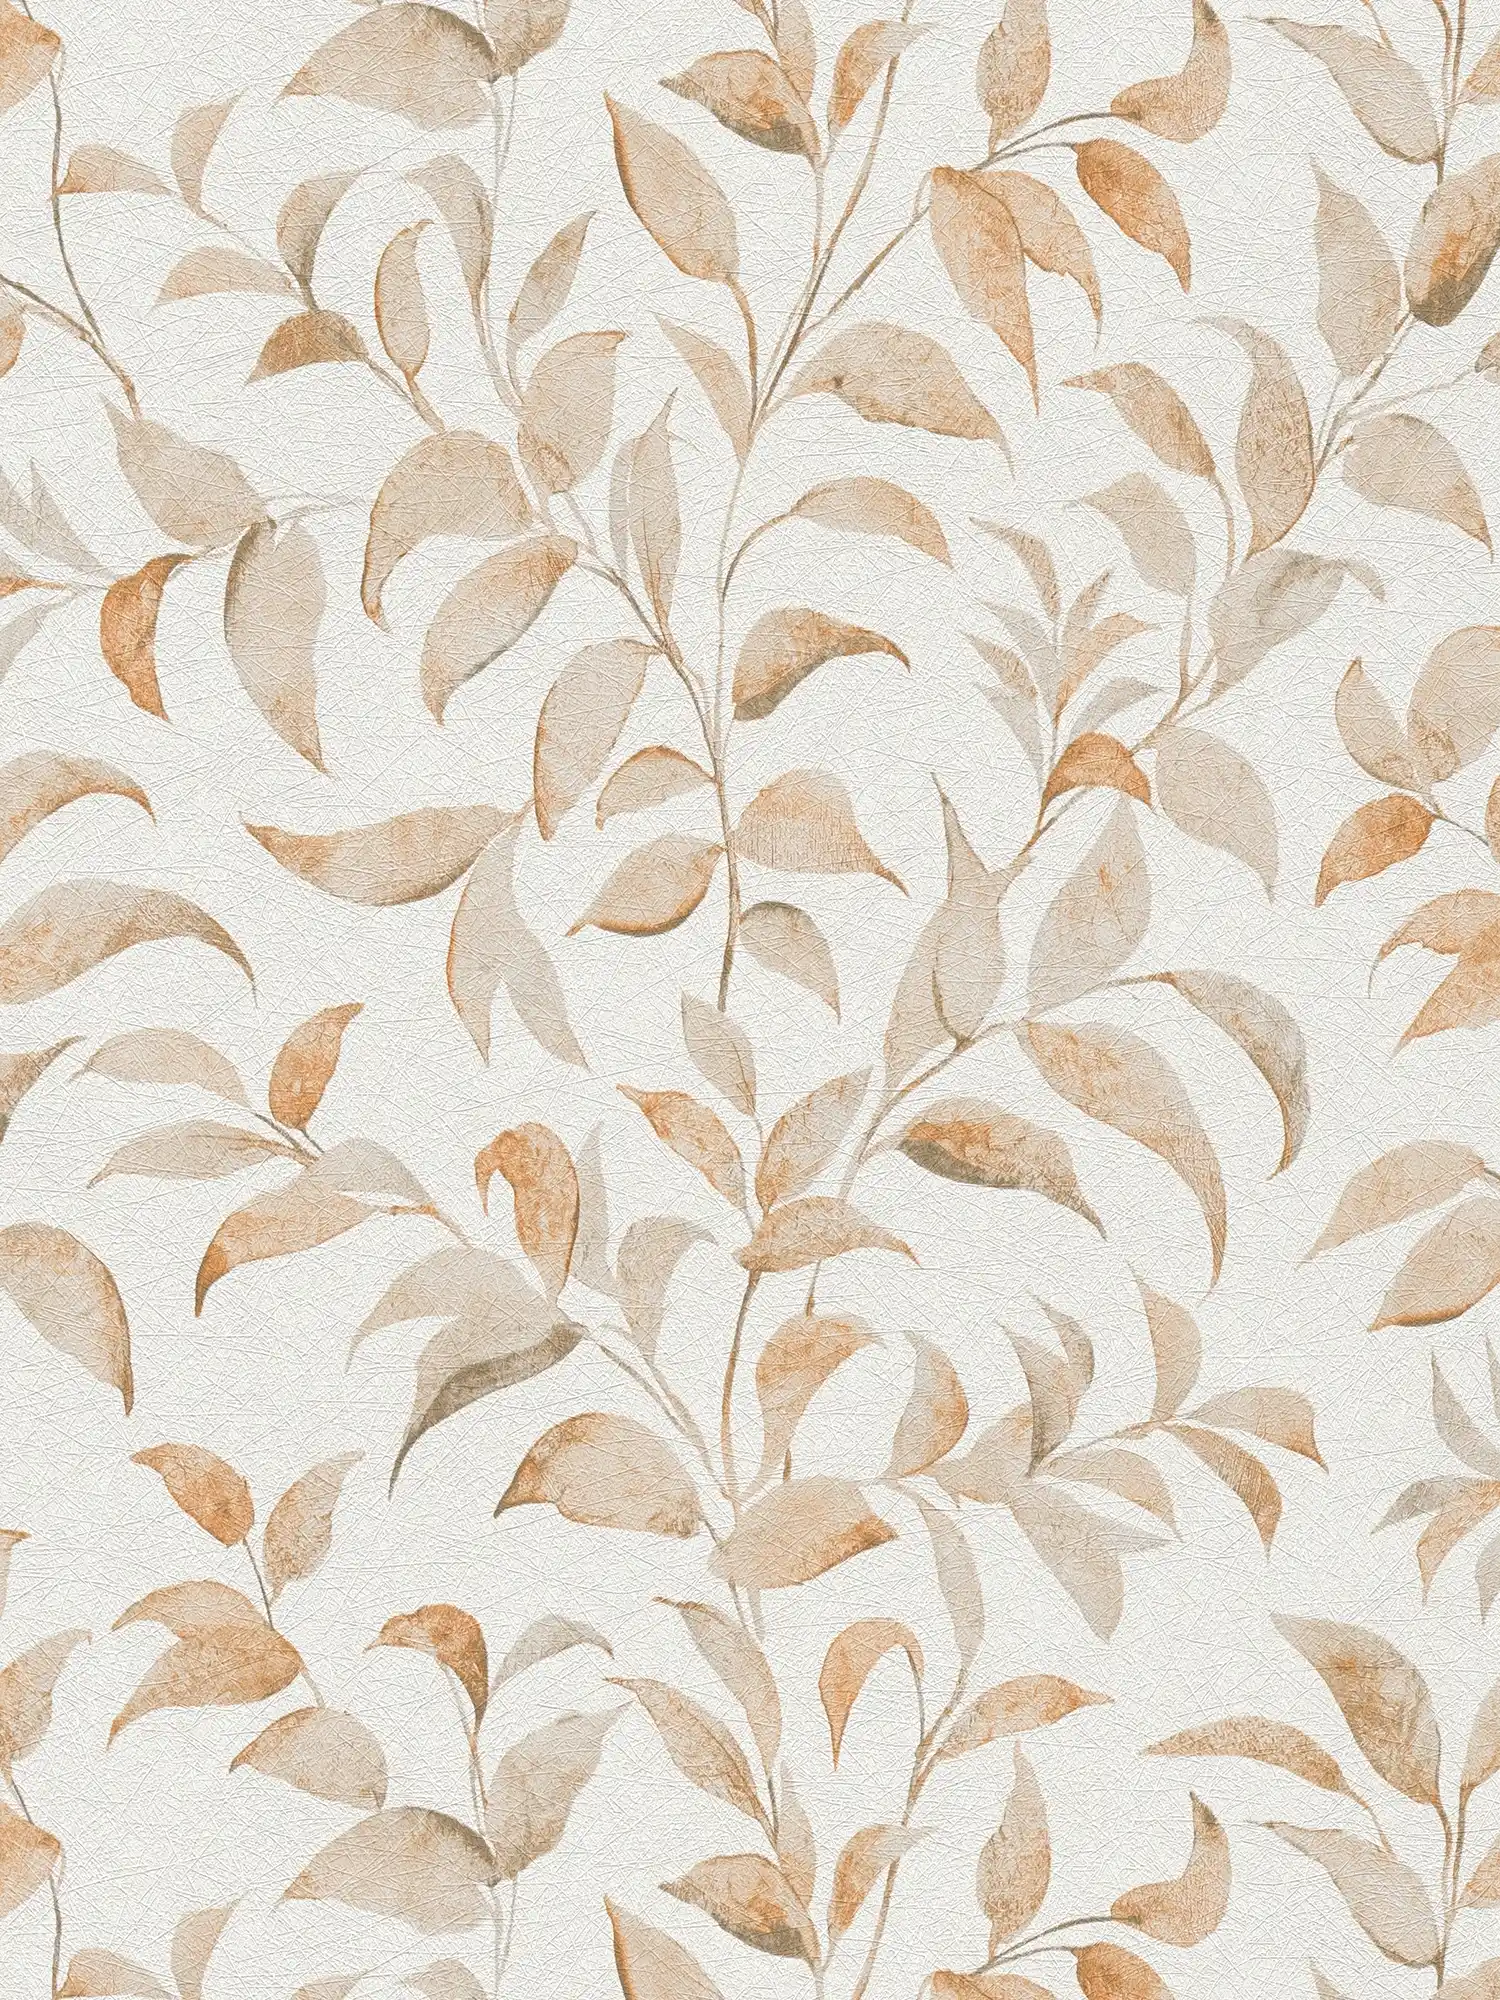 Blätter-Tapete floral schimmernd strukturiert – Weiß, orange
